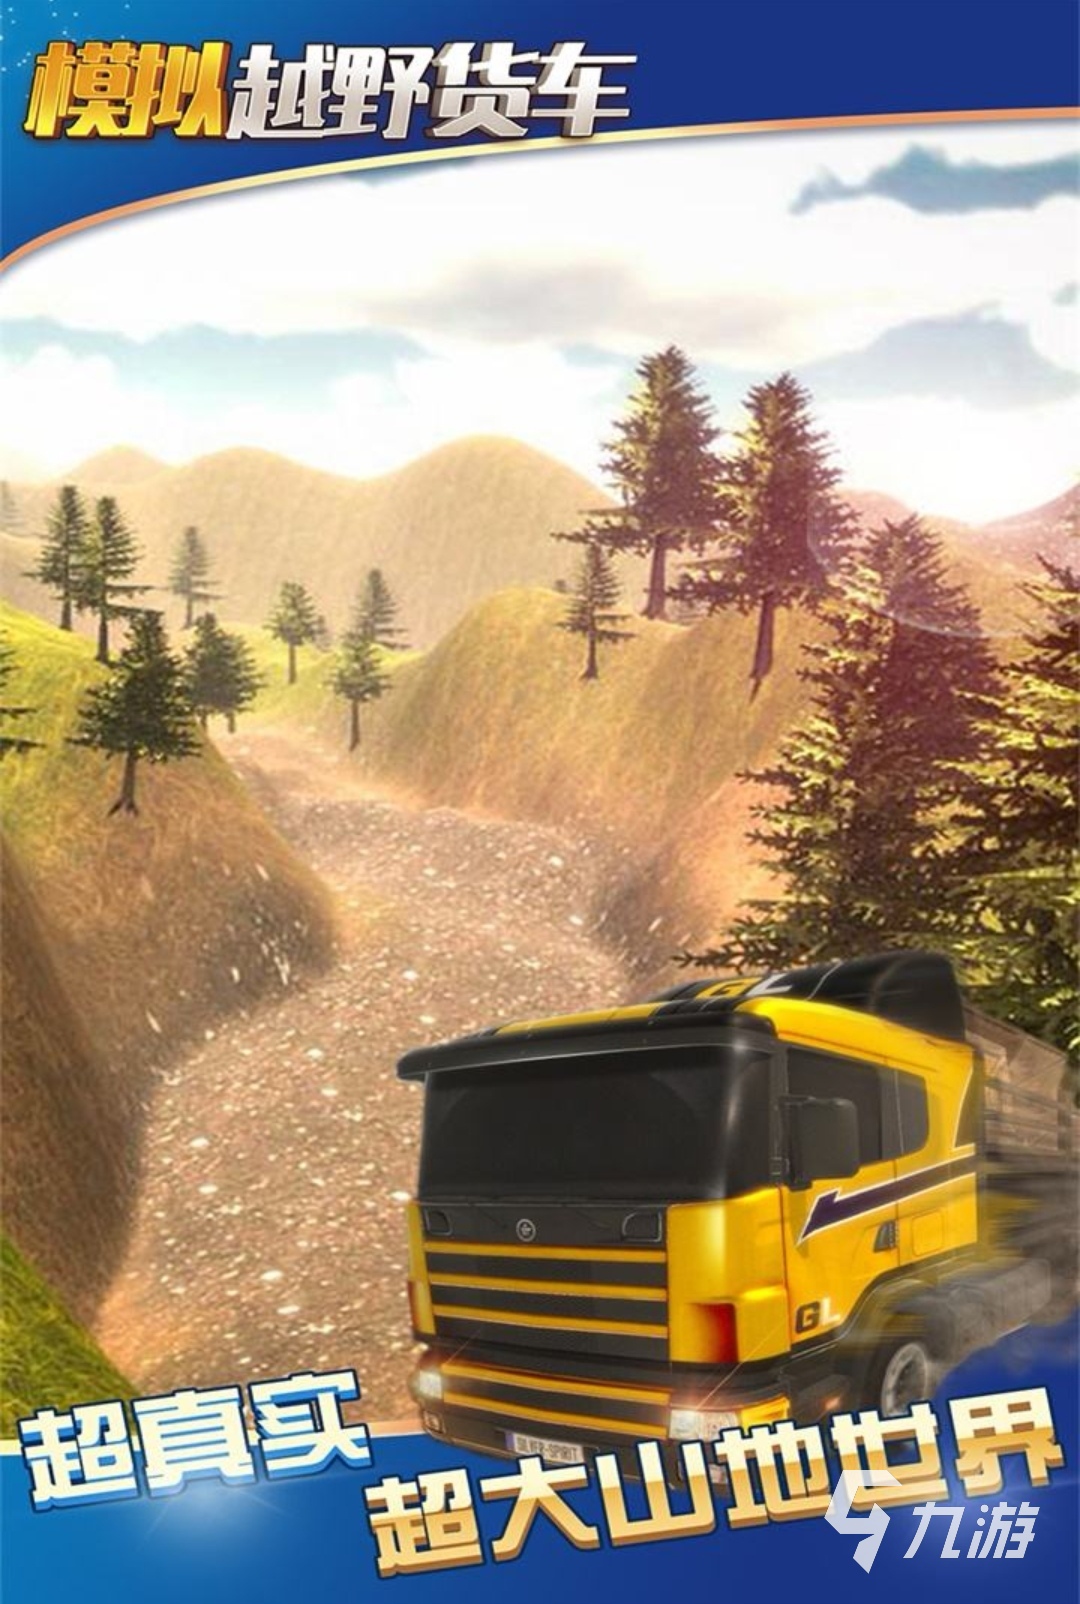 卡车驾驶模拟游戏下载手机版大全2022 人气卡车模拟驾驶游戏排行榜